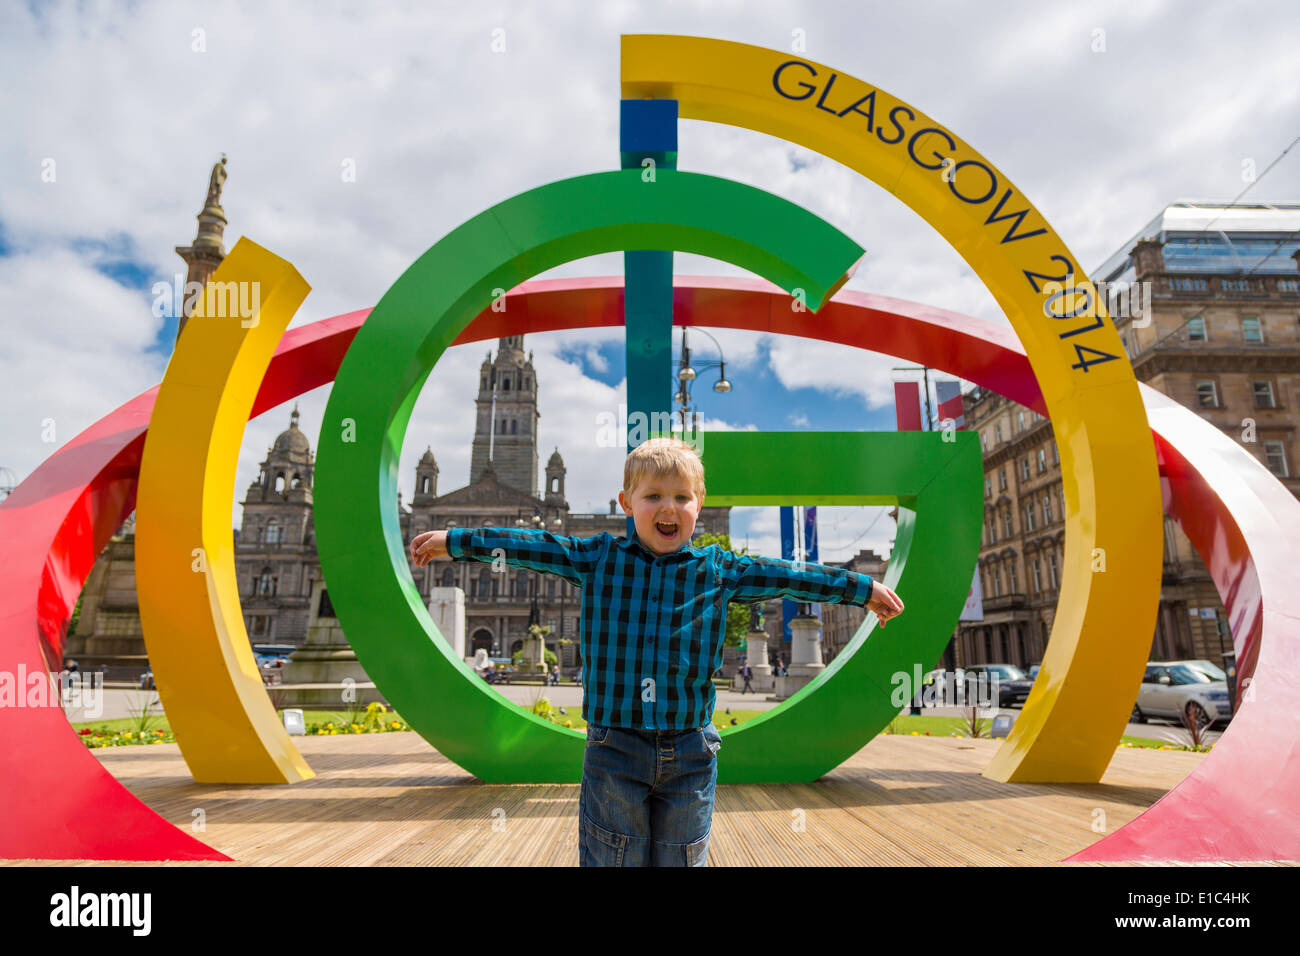 Georges Square, Glasgow, Schottland, Großbritannien. 30. Mai 2014. Touristen und Einheimische genießen das neue 2014-Commonwealth Games-Logo, wie es der Öffentlichkeit vorgestellt. Bildnachweis: Paul Stewart/Alamy Live-Nachrichten Stockfoto